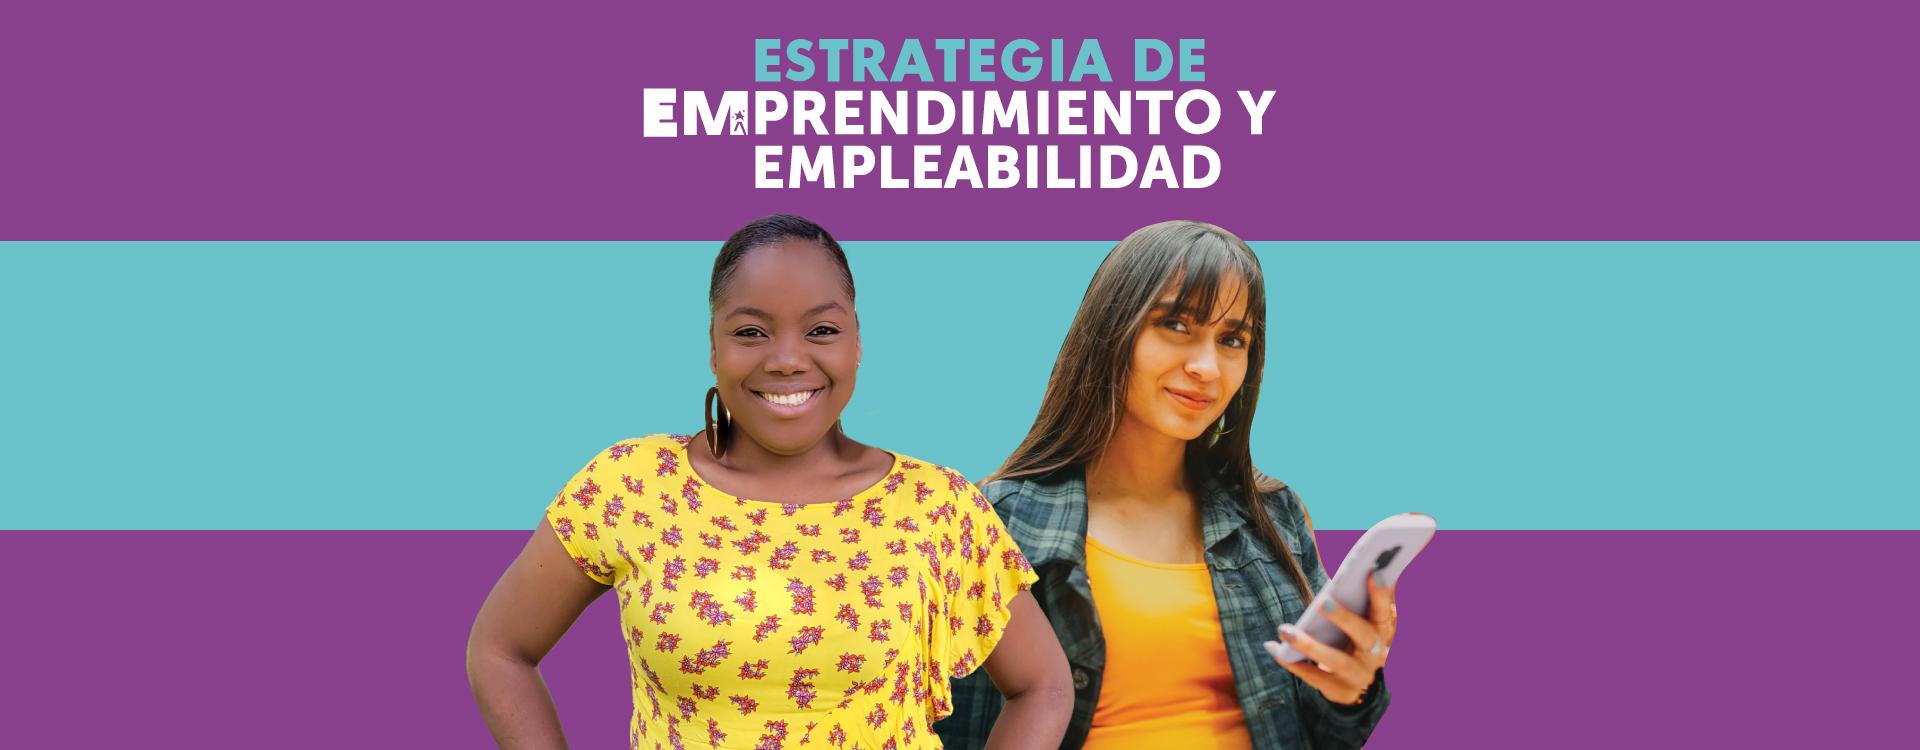 Estrategia de Emprendimiento y Empleabilidad de la Secretaría de la Mujer de Bogotá